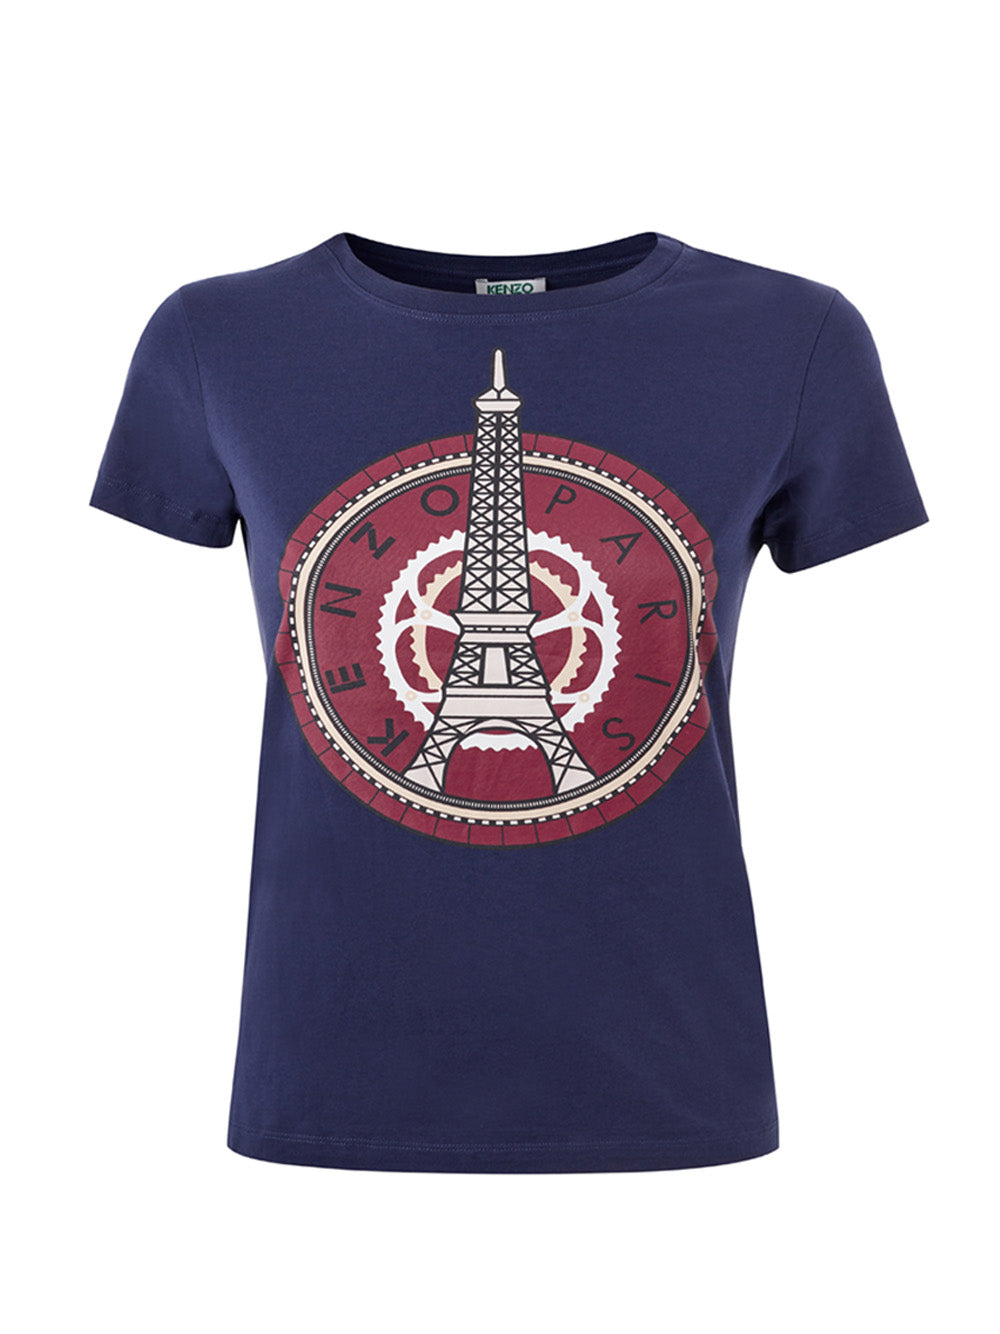 Camiseta Kenzo Tour Eiffel